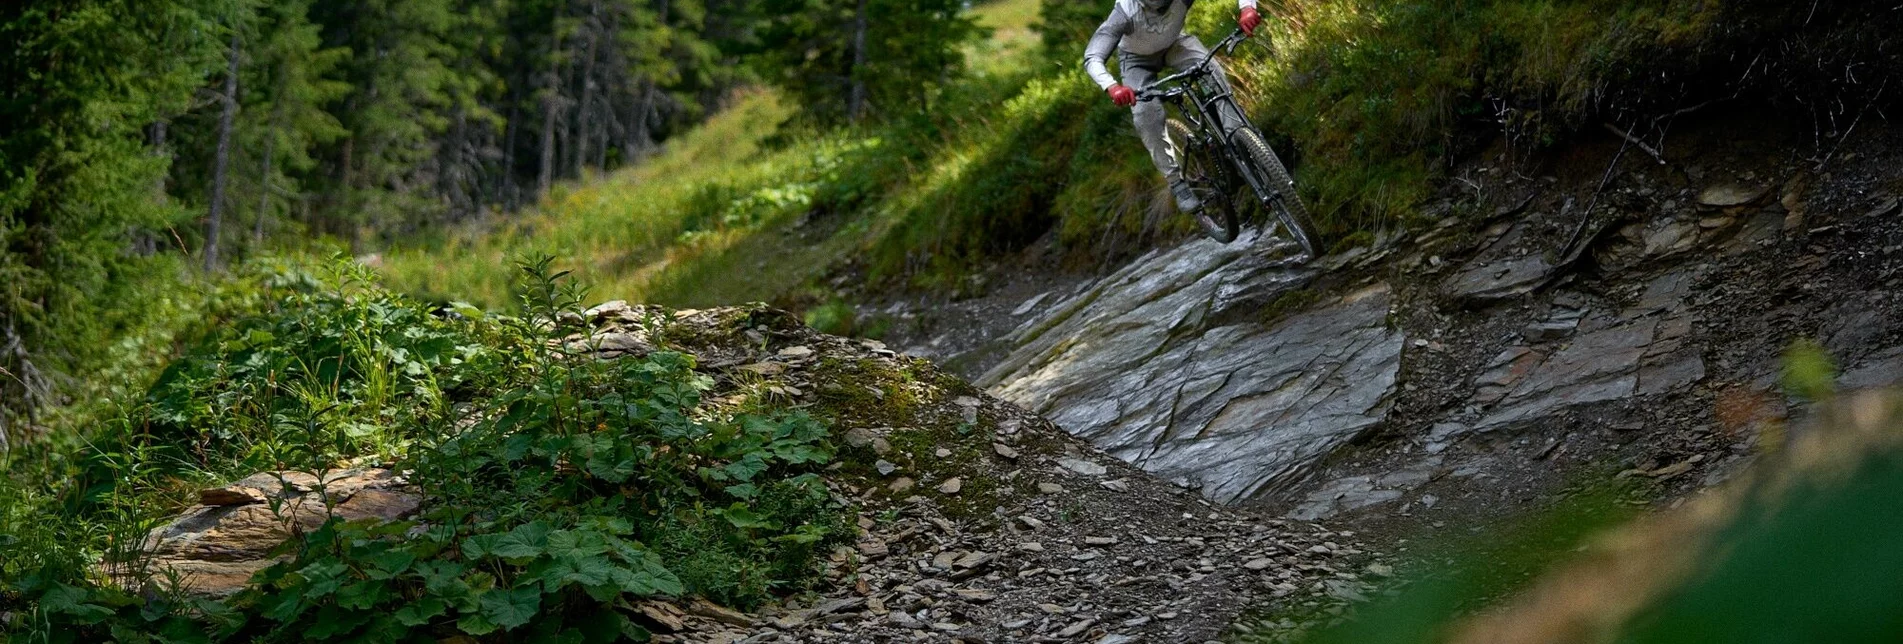 Mountainbike Pro Downhill | 403 - Touren-Impression #1 | © Erlebnisregion Schladming-Dachstein